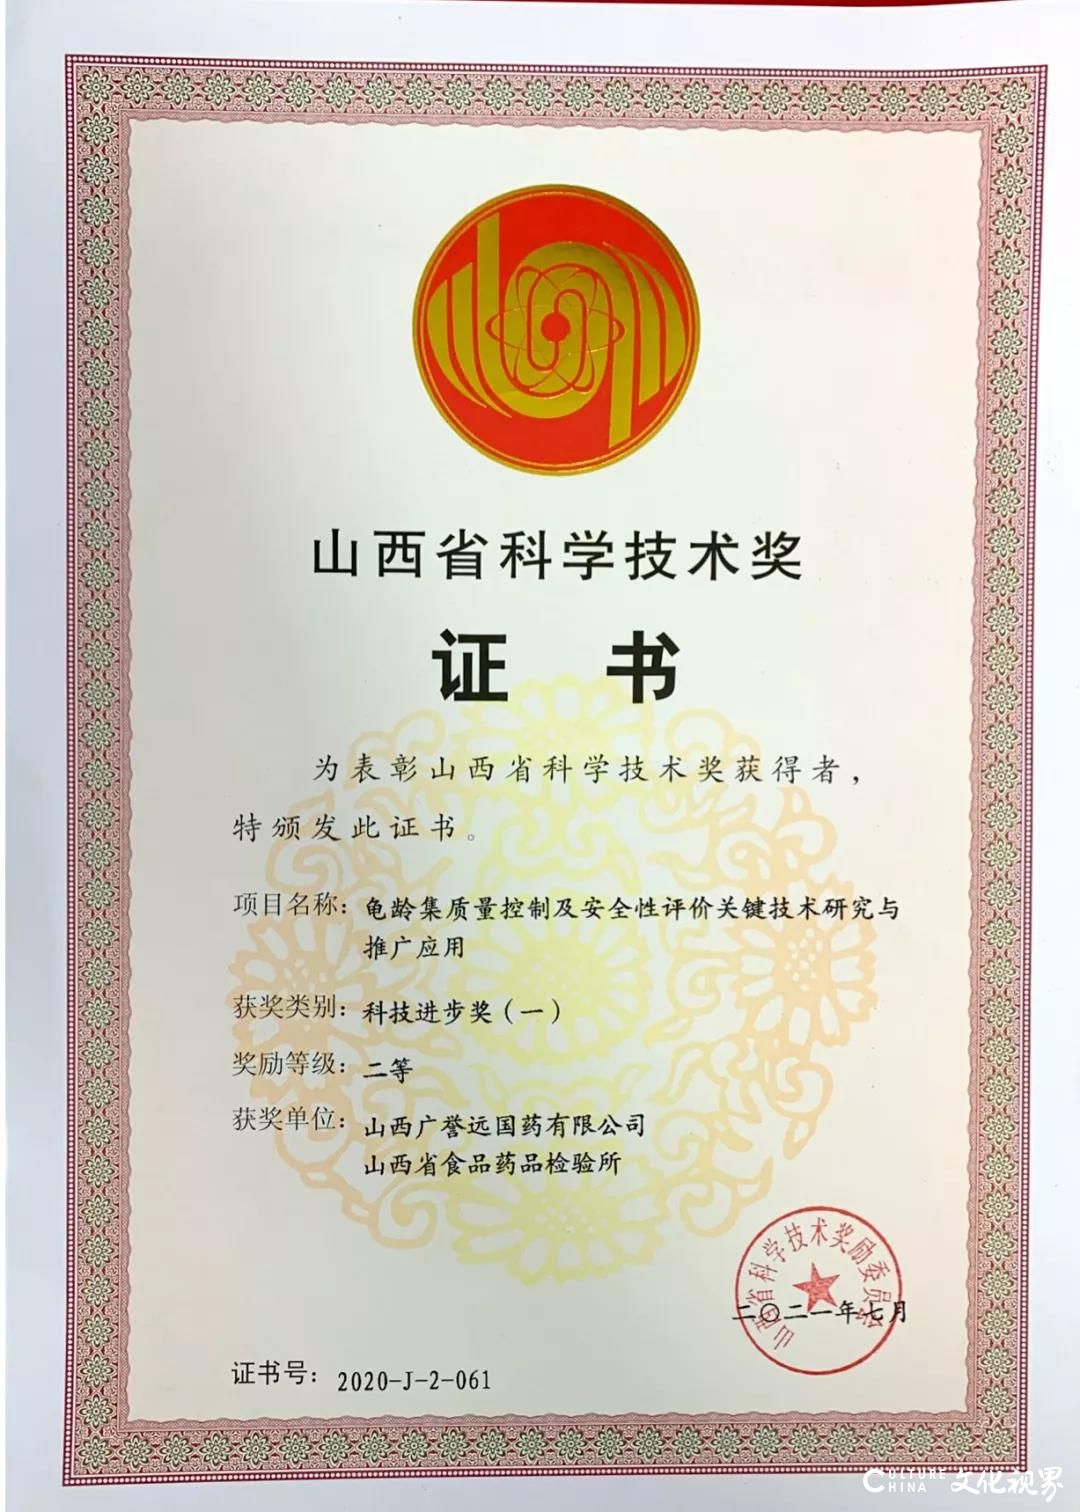 百年国药广誉远荣获山西省“科技进步奖”